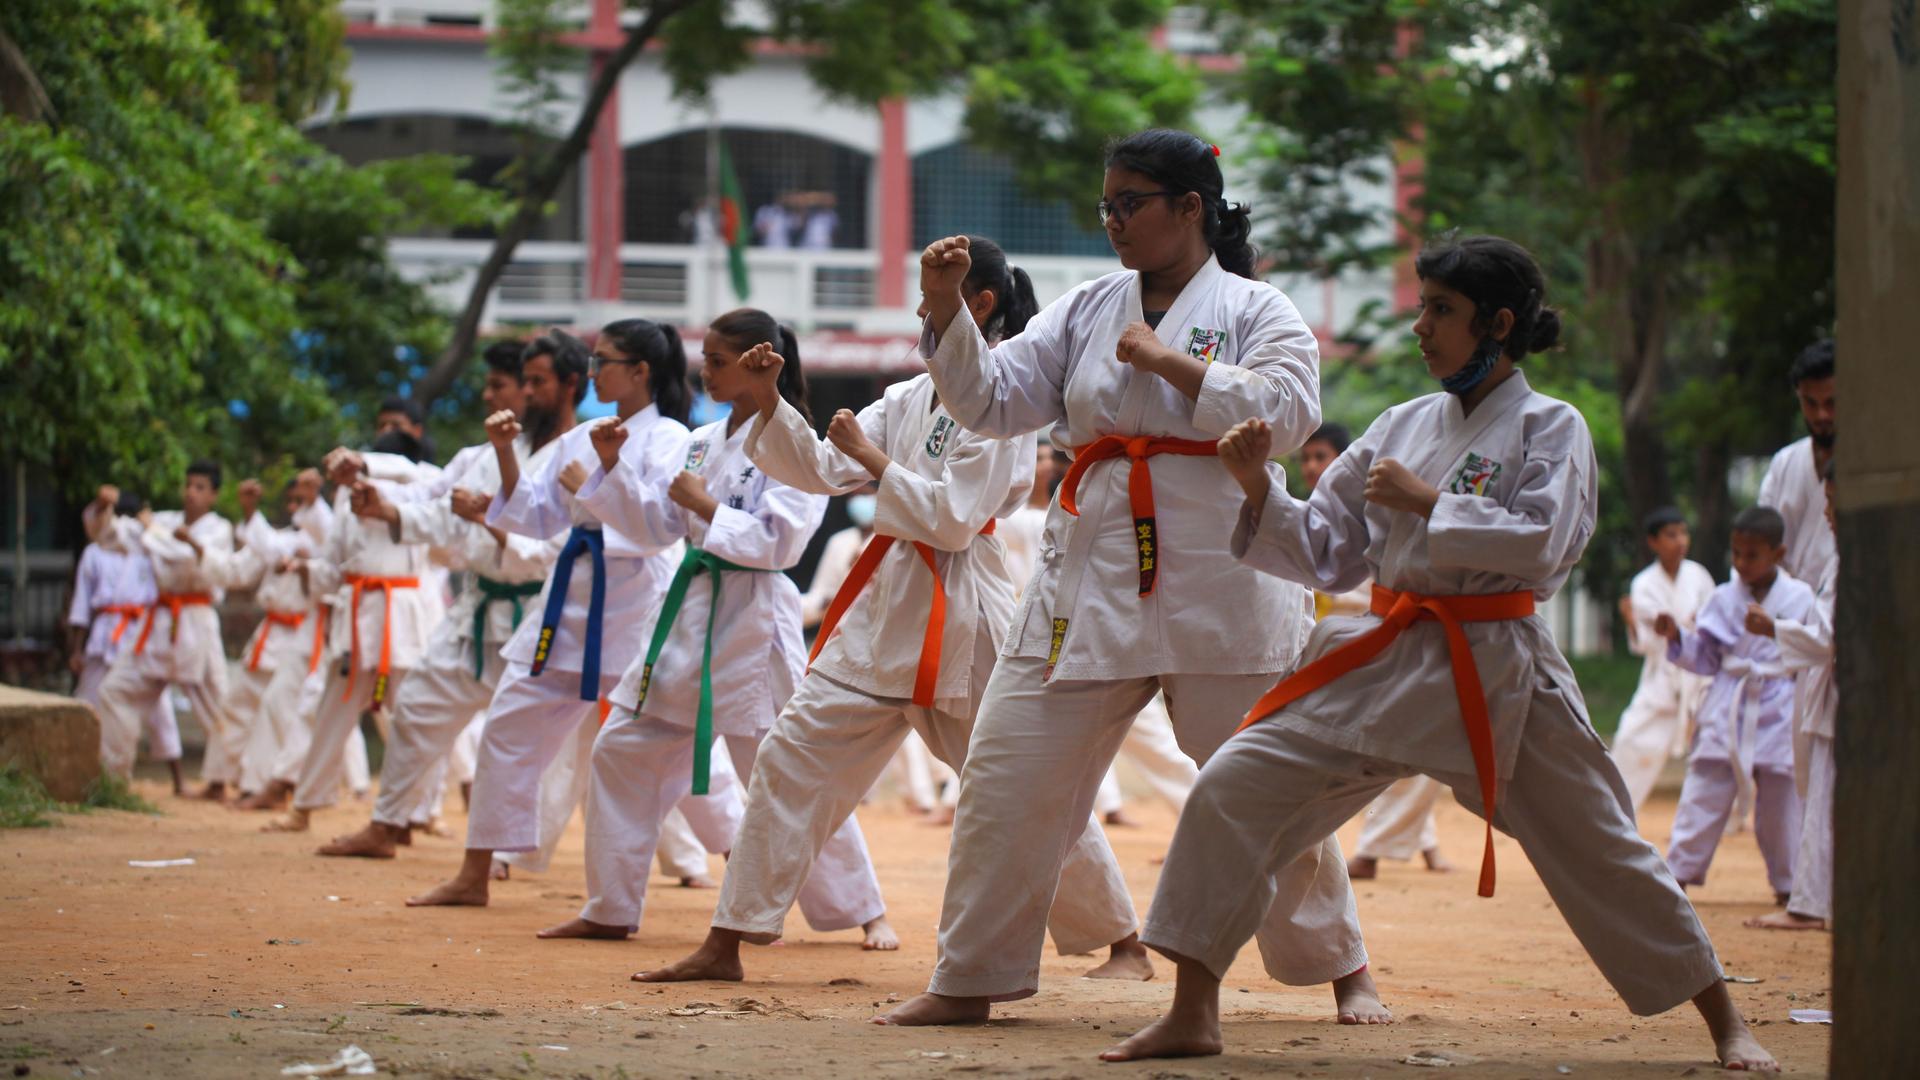 Das Bild zeigt Mädchen aus Bangladesch, die draußen in weißen Karateanzügen und unterschiedlichen Gürtelfarben Karate trainieren.